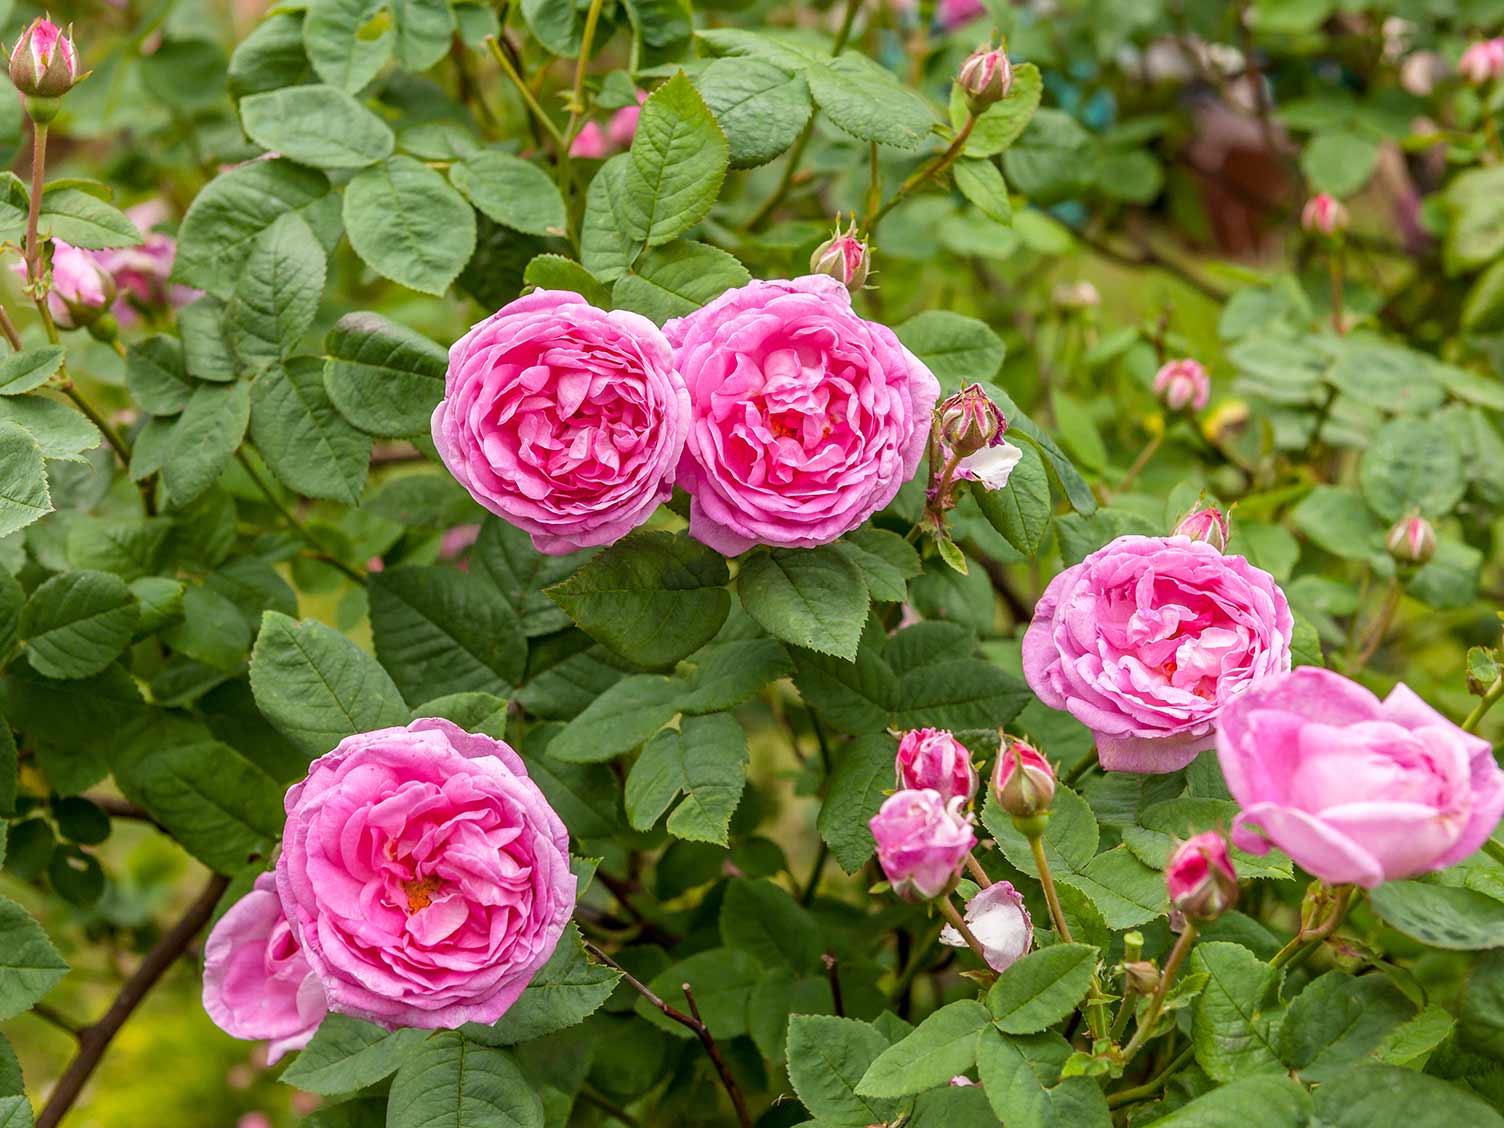 Centifolias shrub roses